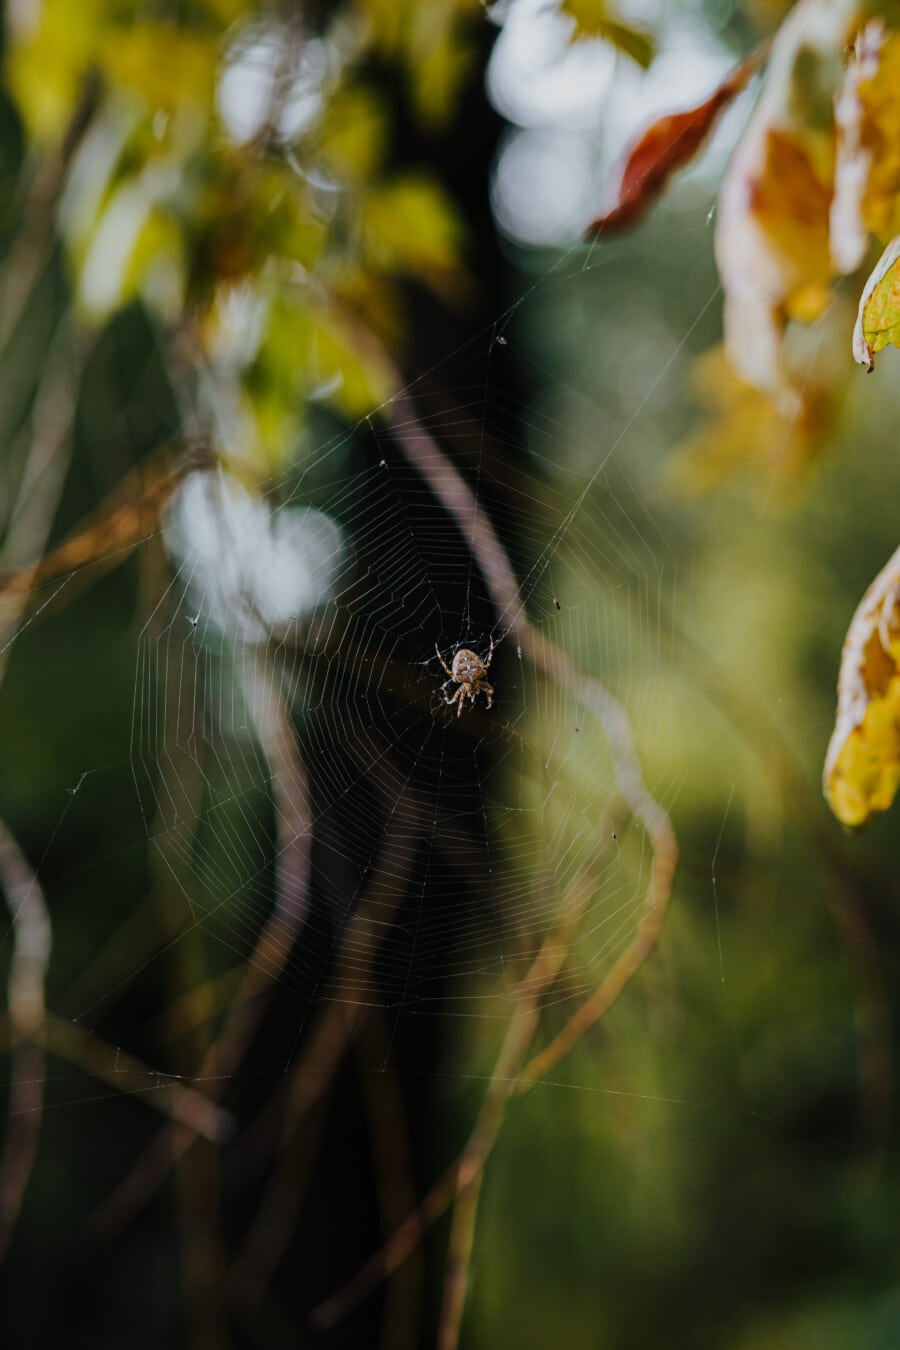 蜘蛛, 蜘蛛网, 蜘蛛网, 陷阱, 性质, 蜘蛛, 昆虫, 户外活动, 野生动物, 蛛网